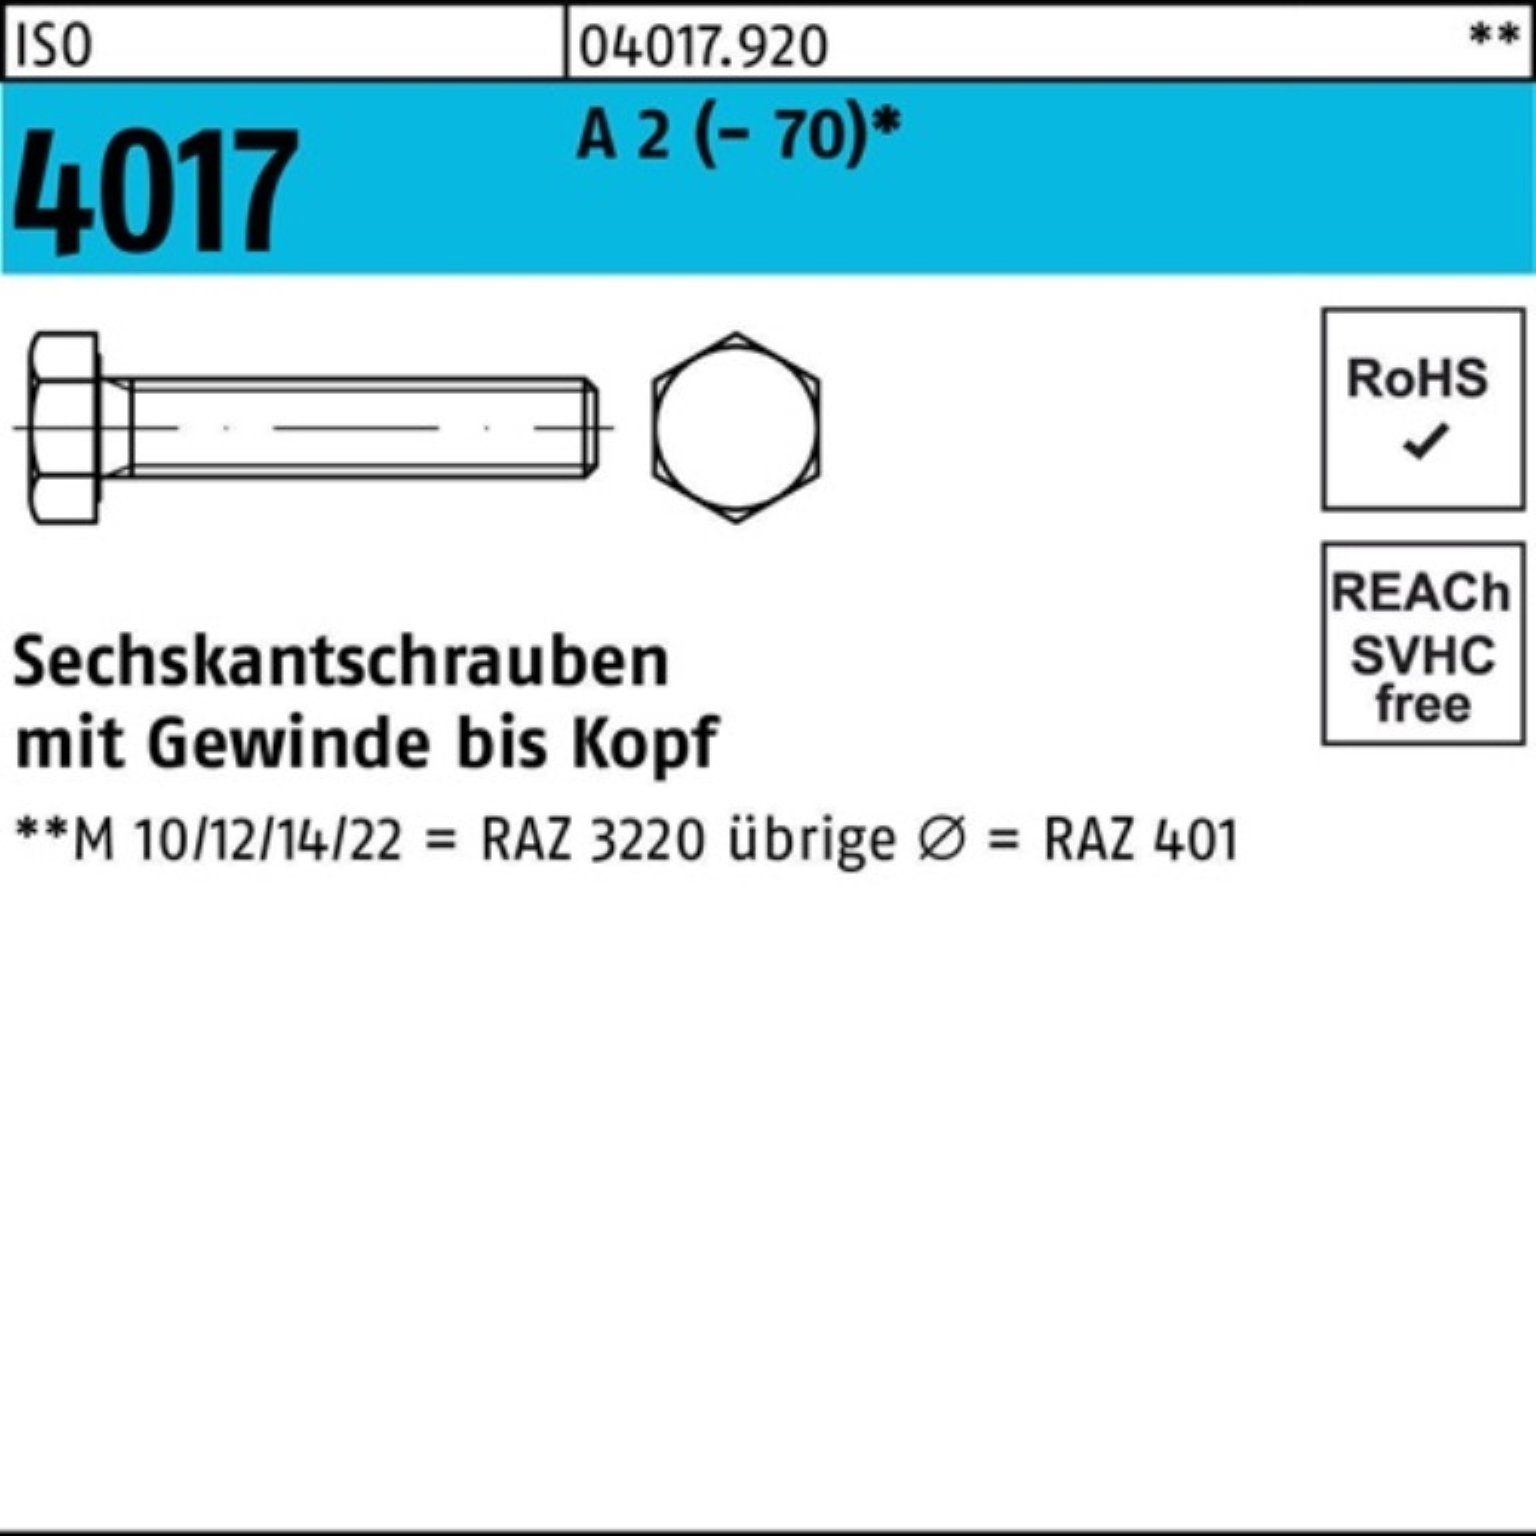 Bufab Sechskantschraube 100er Pack Sechskantschraube ISO 4017 VG M16x 20 A 2 (70) 50 Stück